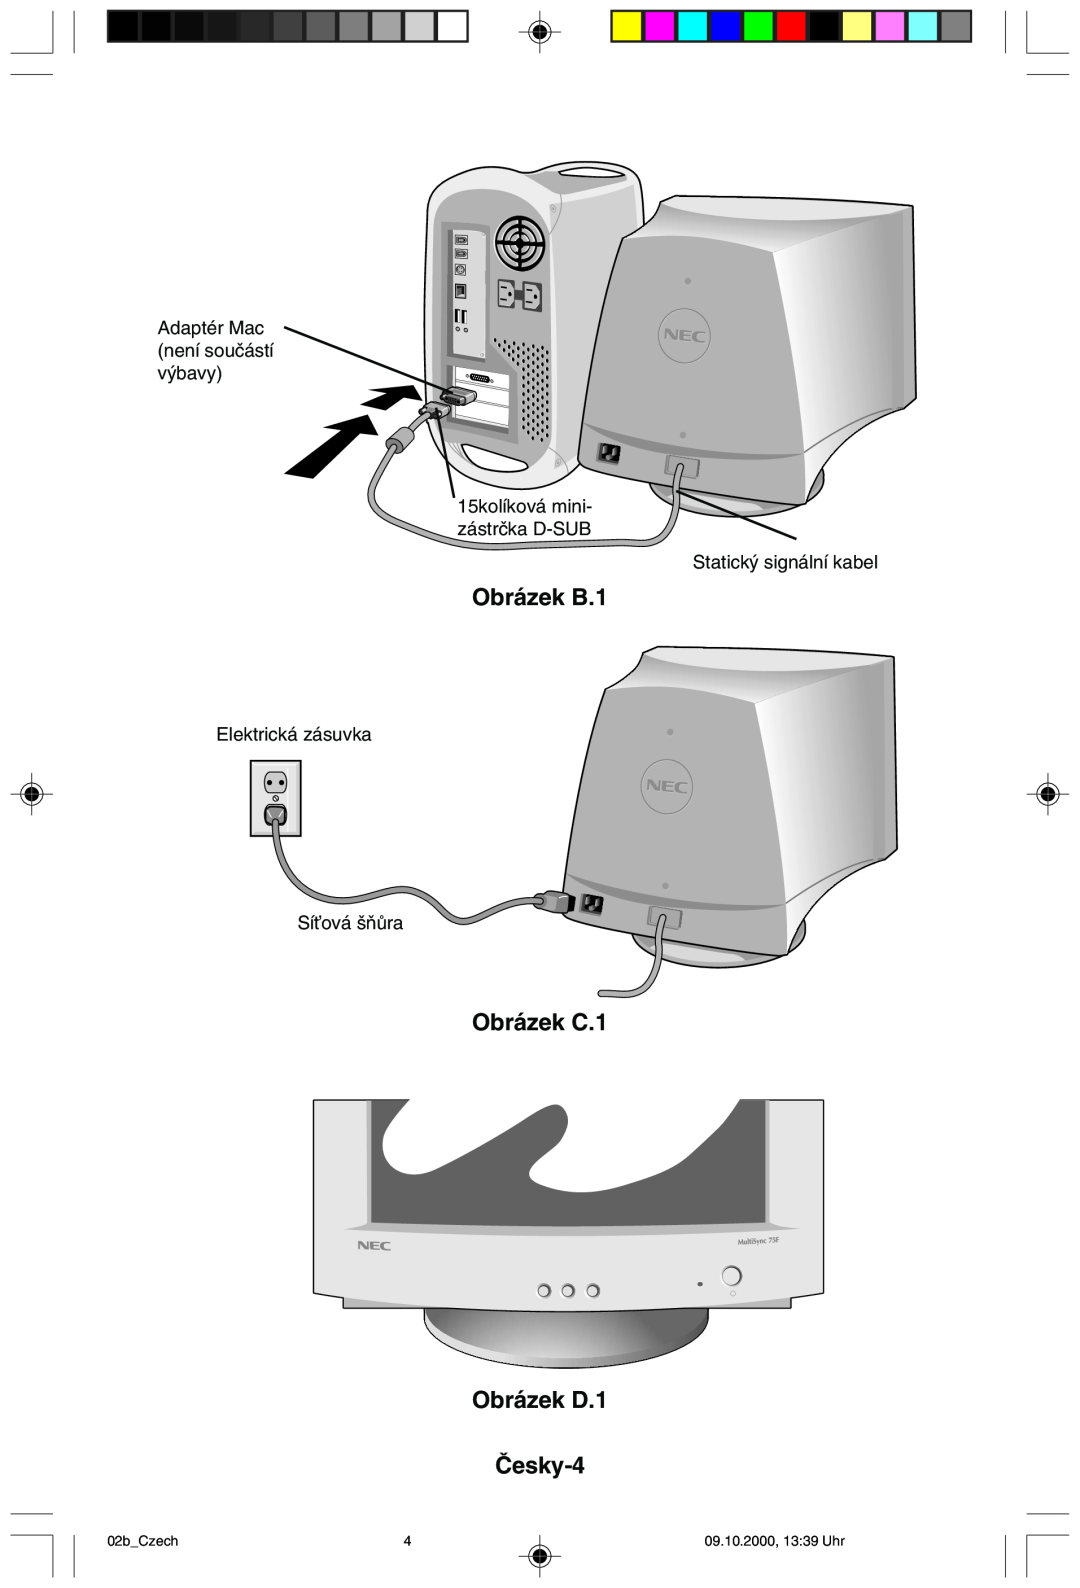 NEC 95F Obrázek B.1, Obrázek C.1 Obrázek D.1 âesky-4, Adaptér Mac není souãástí v˘bavy 15kolíková mini- zástrãka D-SUB 